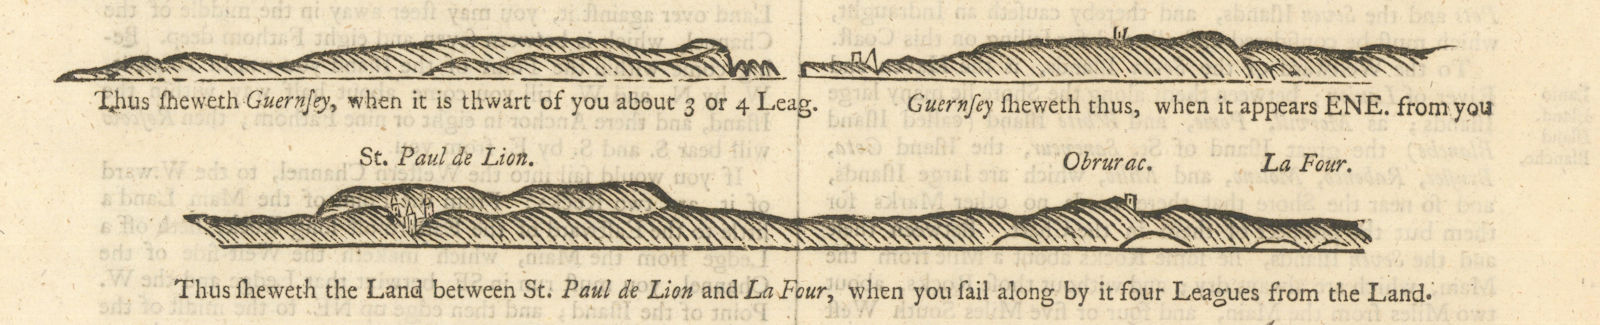 Guernsey & Finistere coast profiles. Saint-Pol-de-Léon. MOUNT & PAGE 1758 map